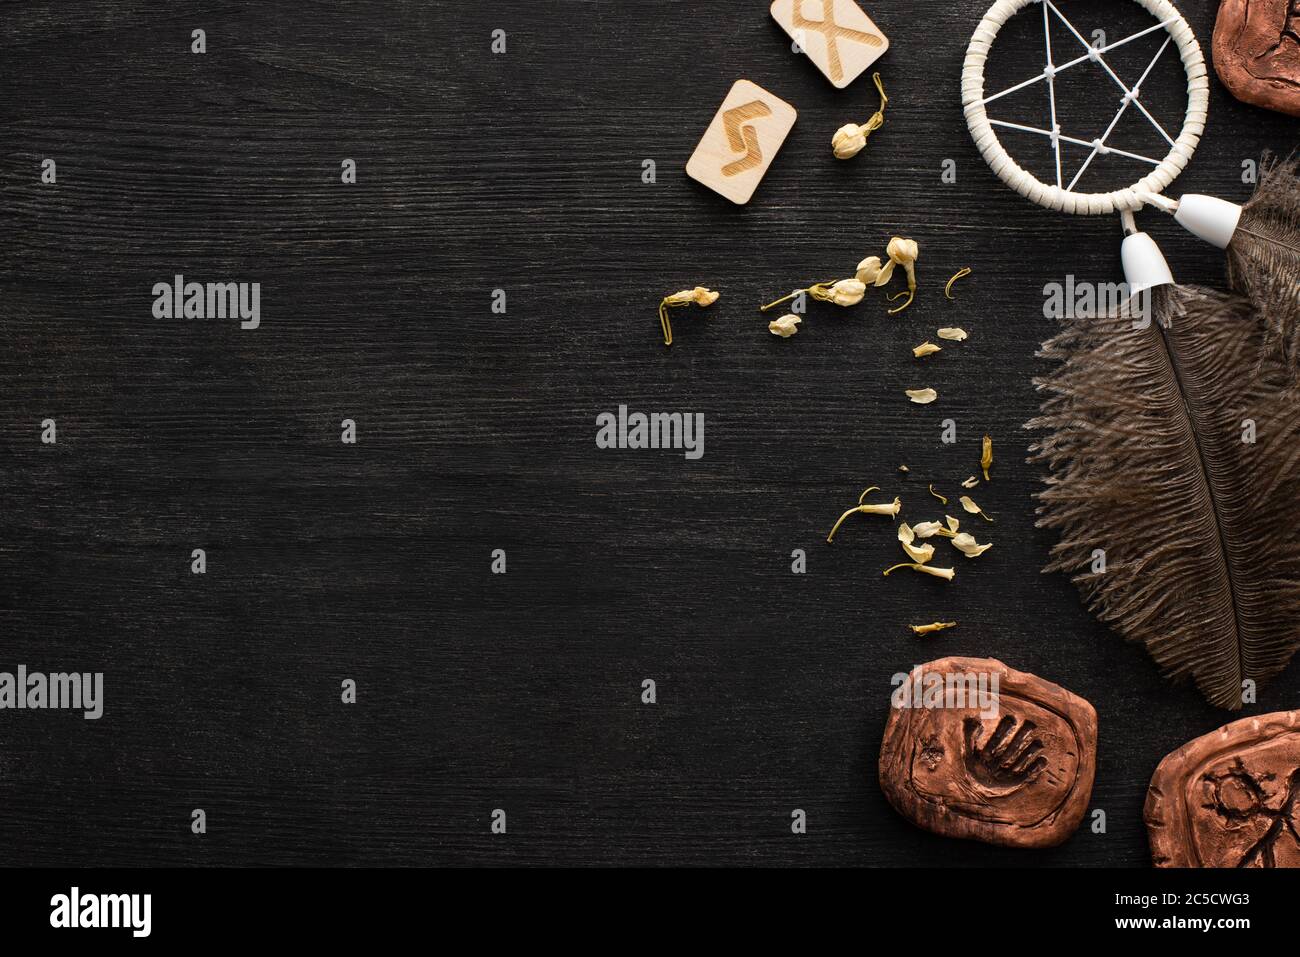 Vue de dessus de dreamcatcher, runes et fleurs sèches sur fond en bois noir avec espace de copie Banque D'Images